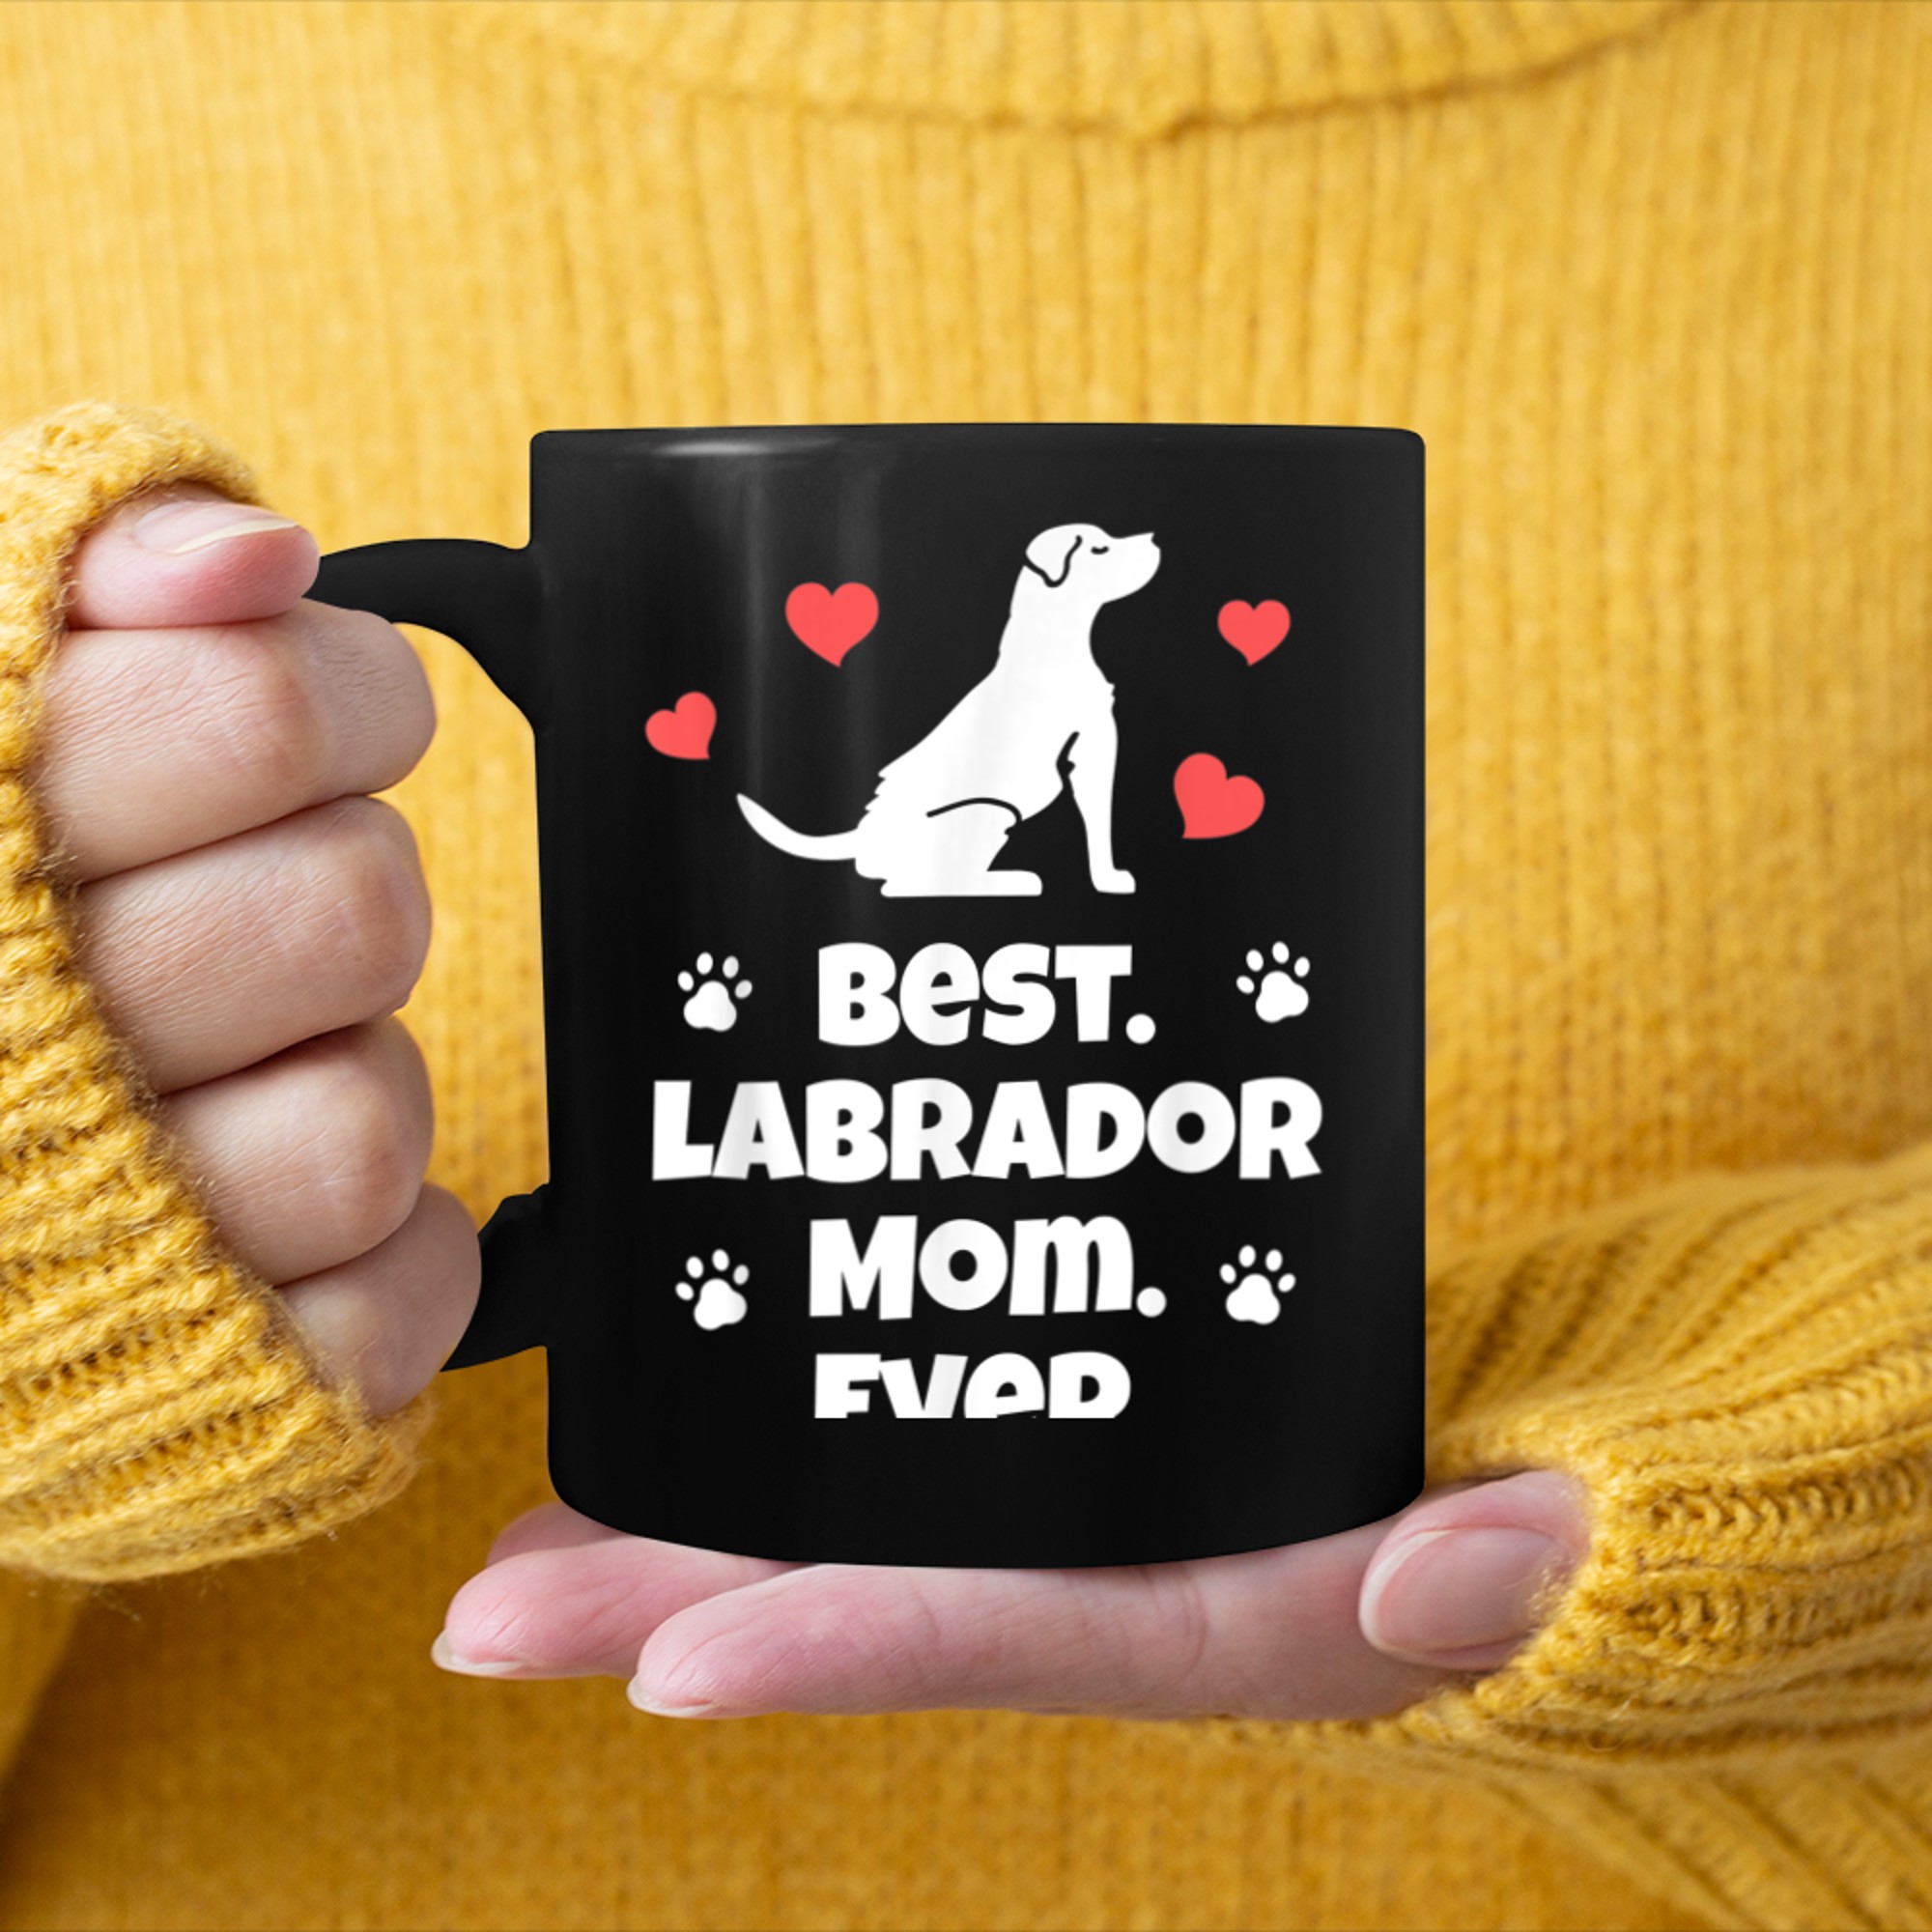 Best Labrador Mom Ever - Labrador Mom mug black